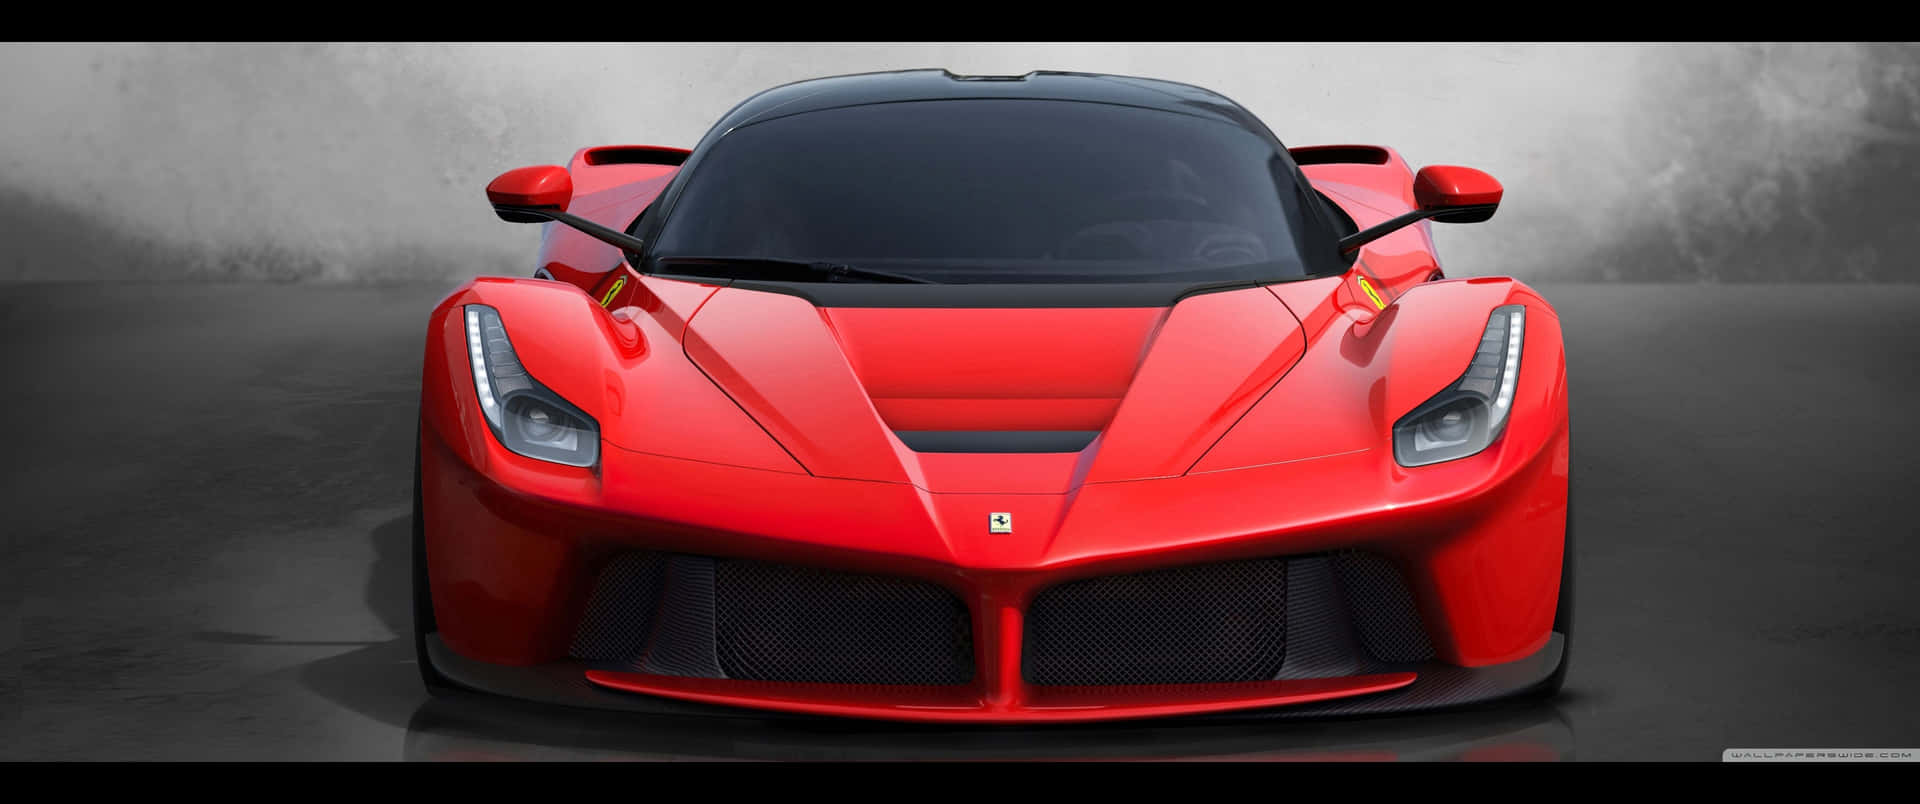 Unosguardo Mozzafiato Alla Lussuosa Auto Sportiva Di Ferrari